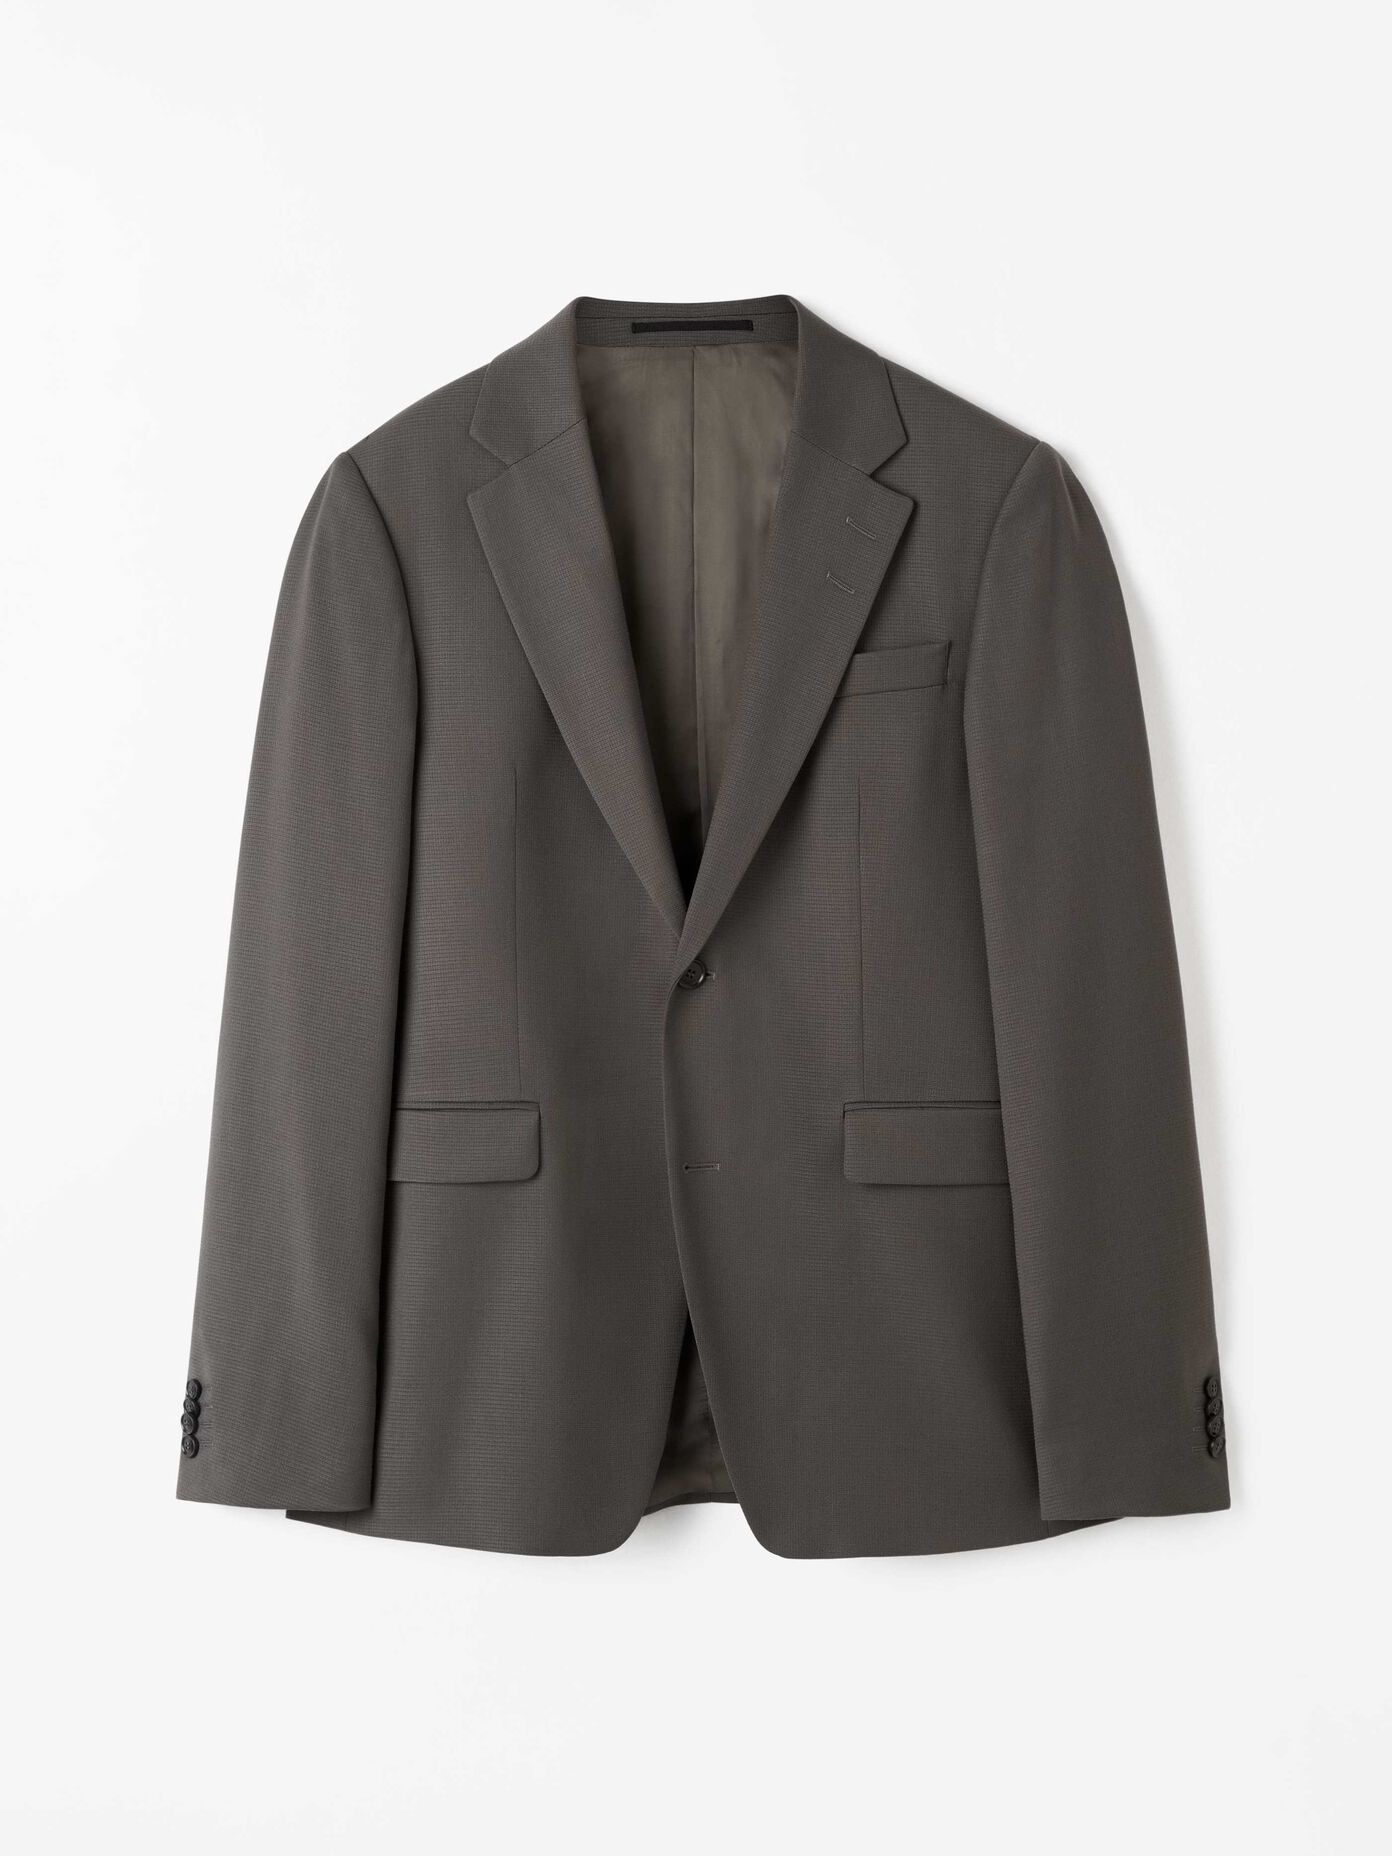 Suits - See all designer suits online at Tiger of Sweden